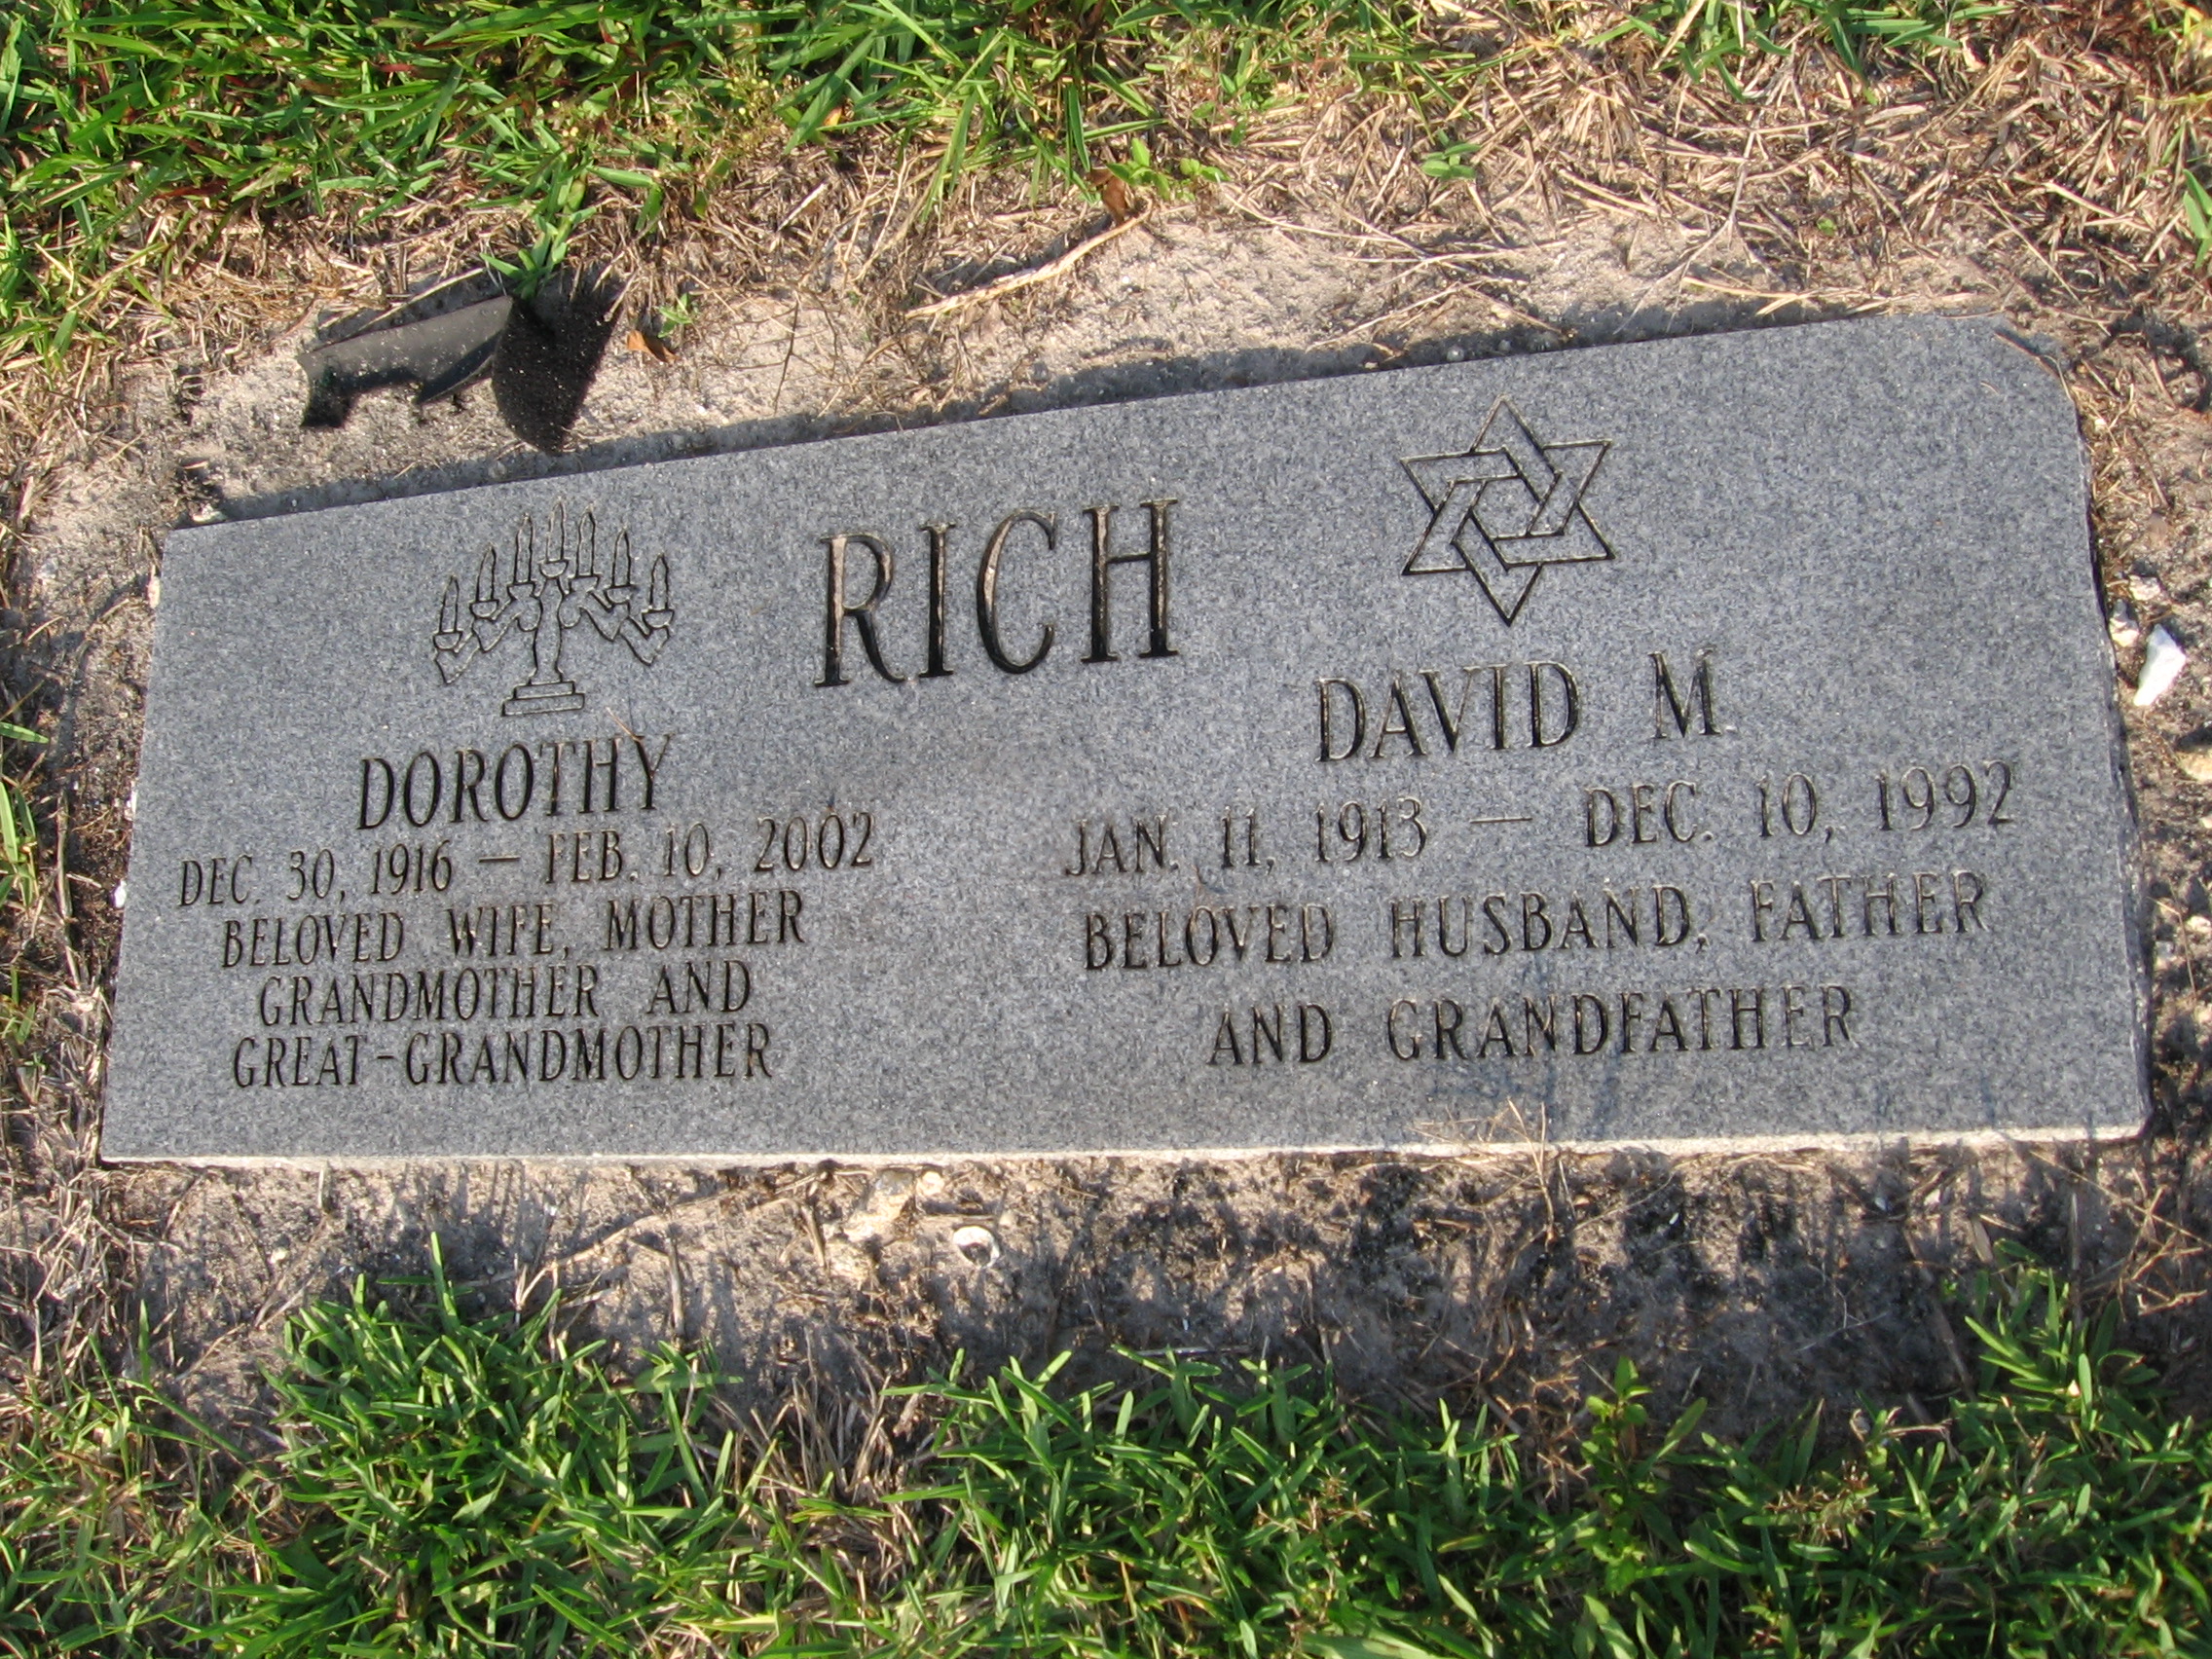 Dorothy Rich